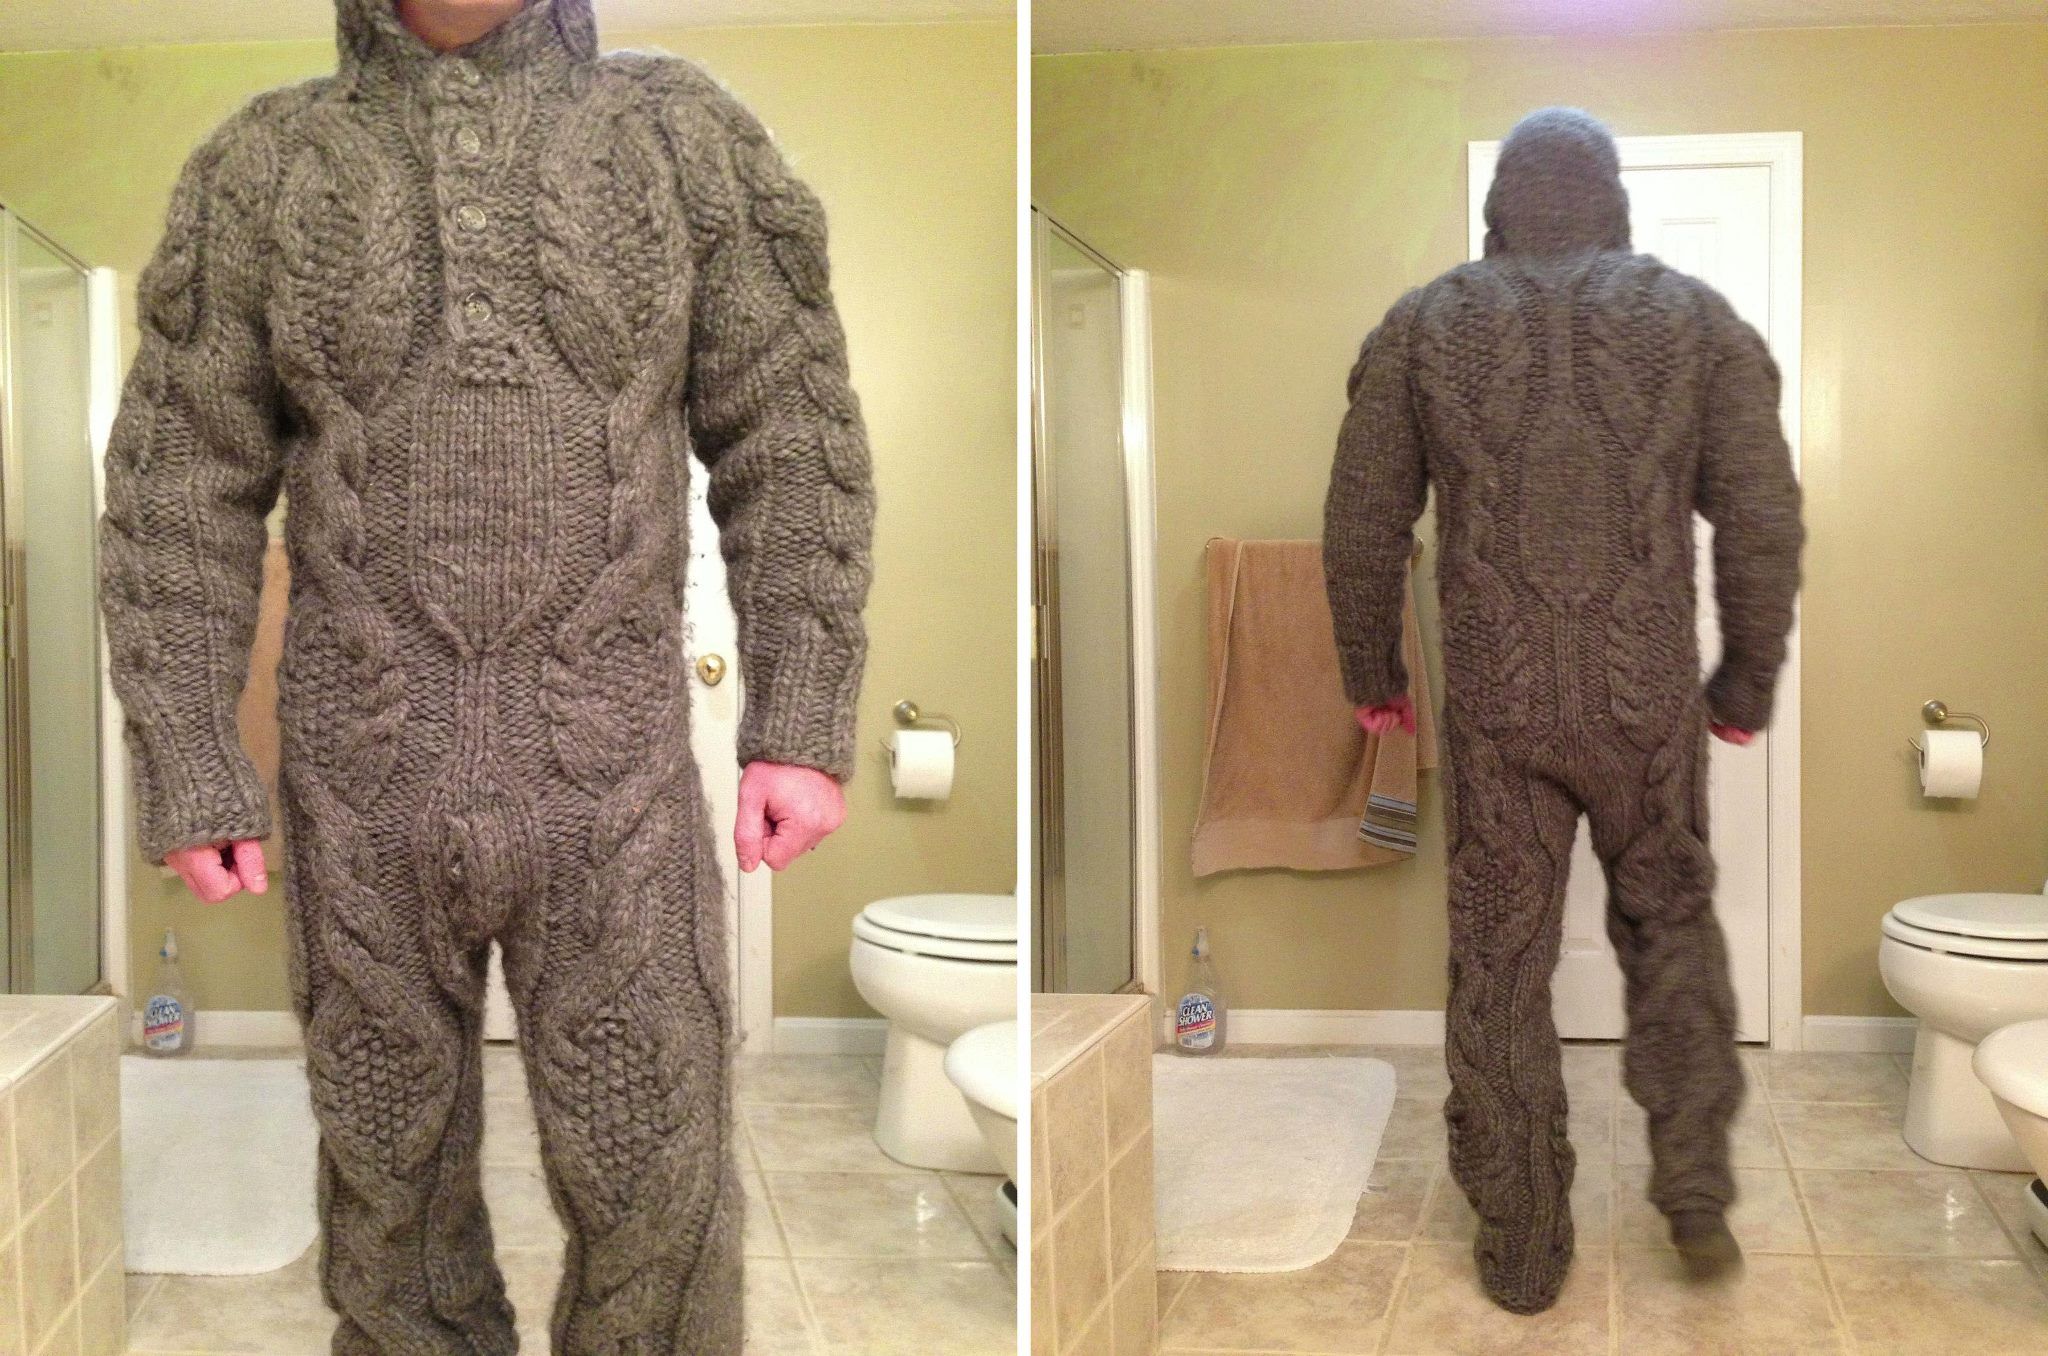 Hình ảnh về bộ trang phục len khổng lồ bất ngờ được chia sẻ lại trên mạng xã hội.